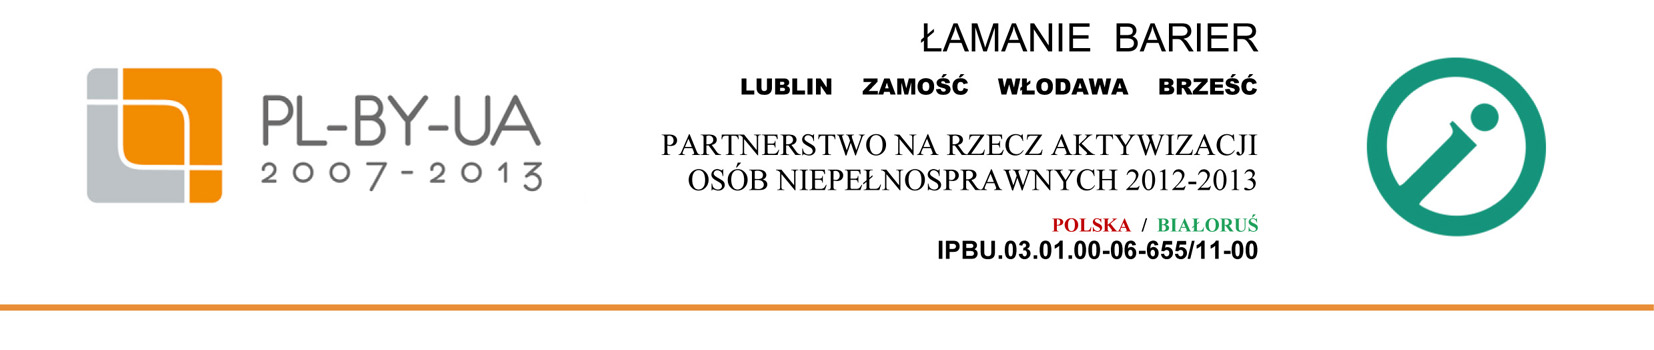 Łamanie Barier - Lublin - Zamość - Włodawa - Brześć - partnerstwo na rzecz aktywizacji osób niepełnosprawnych 